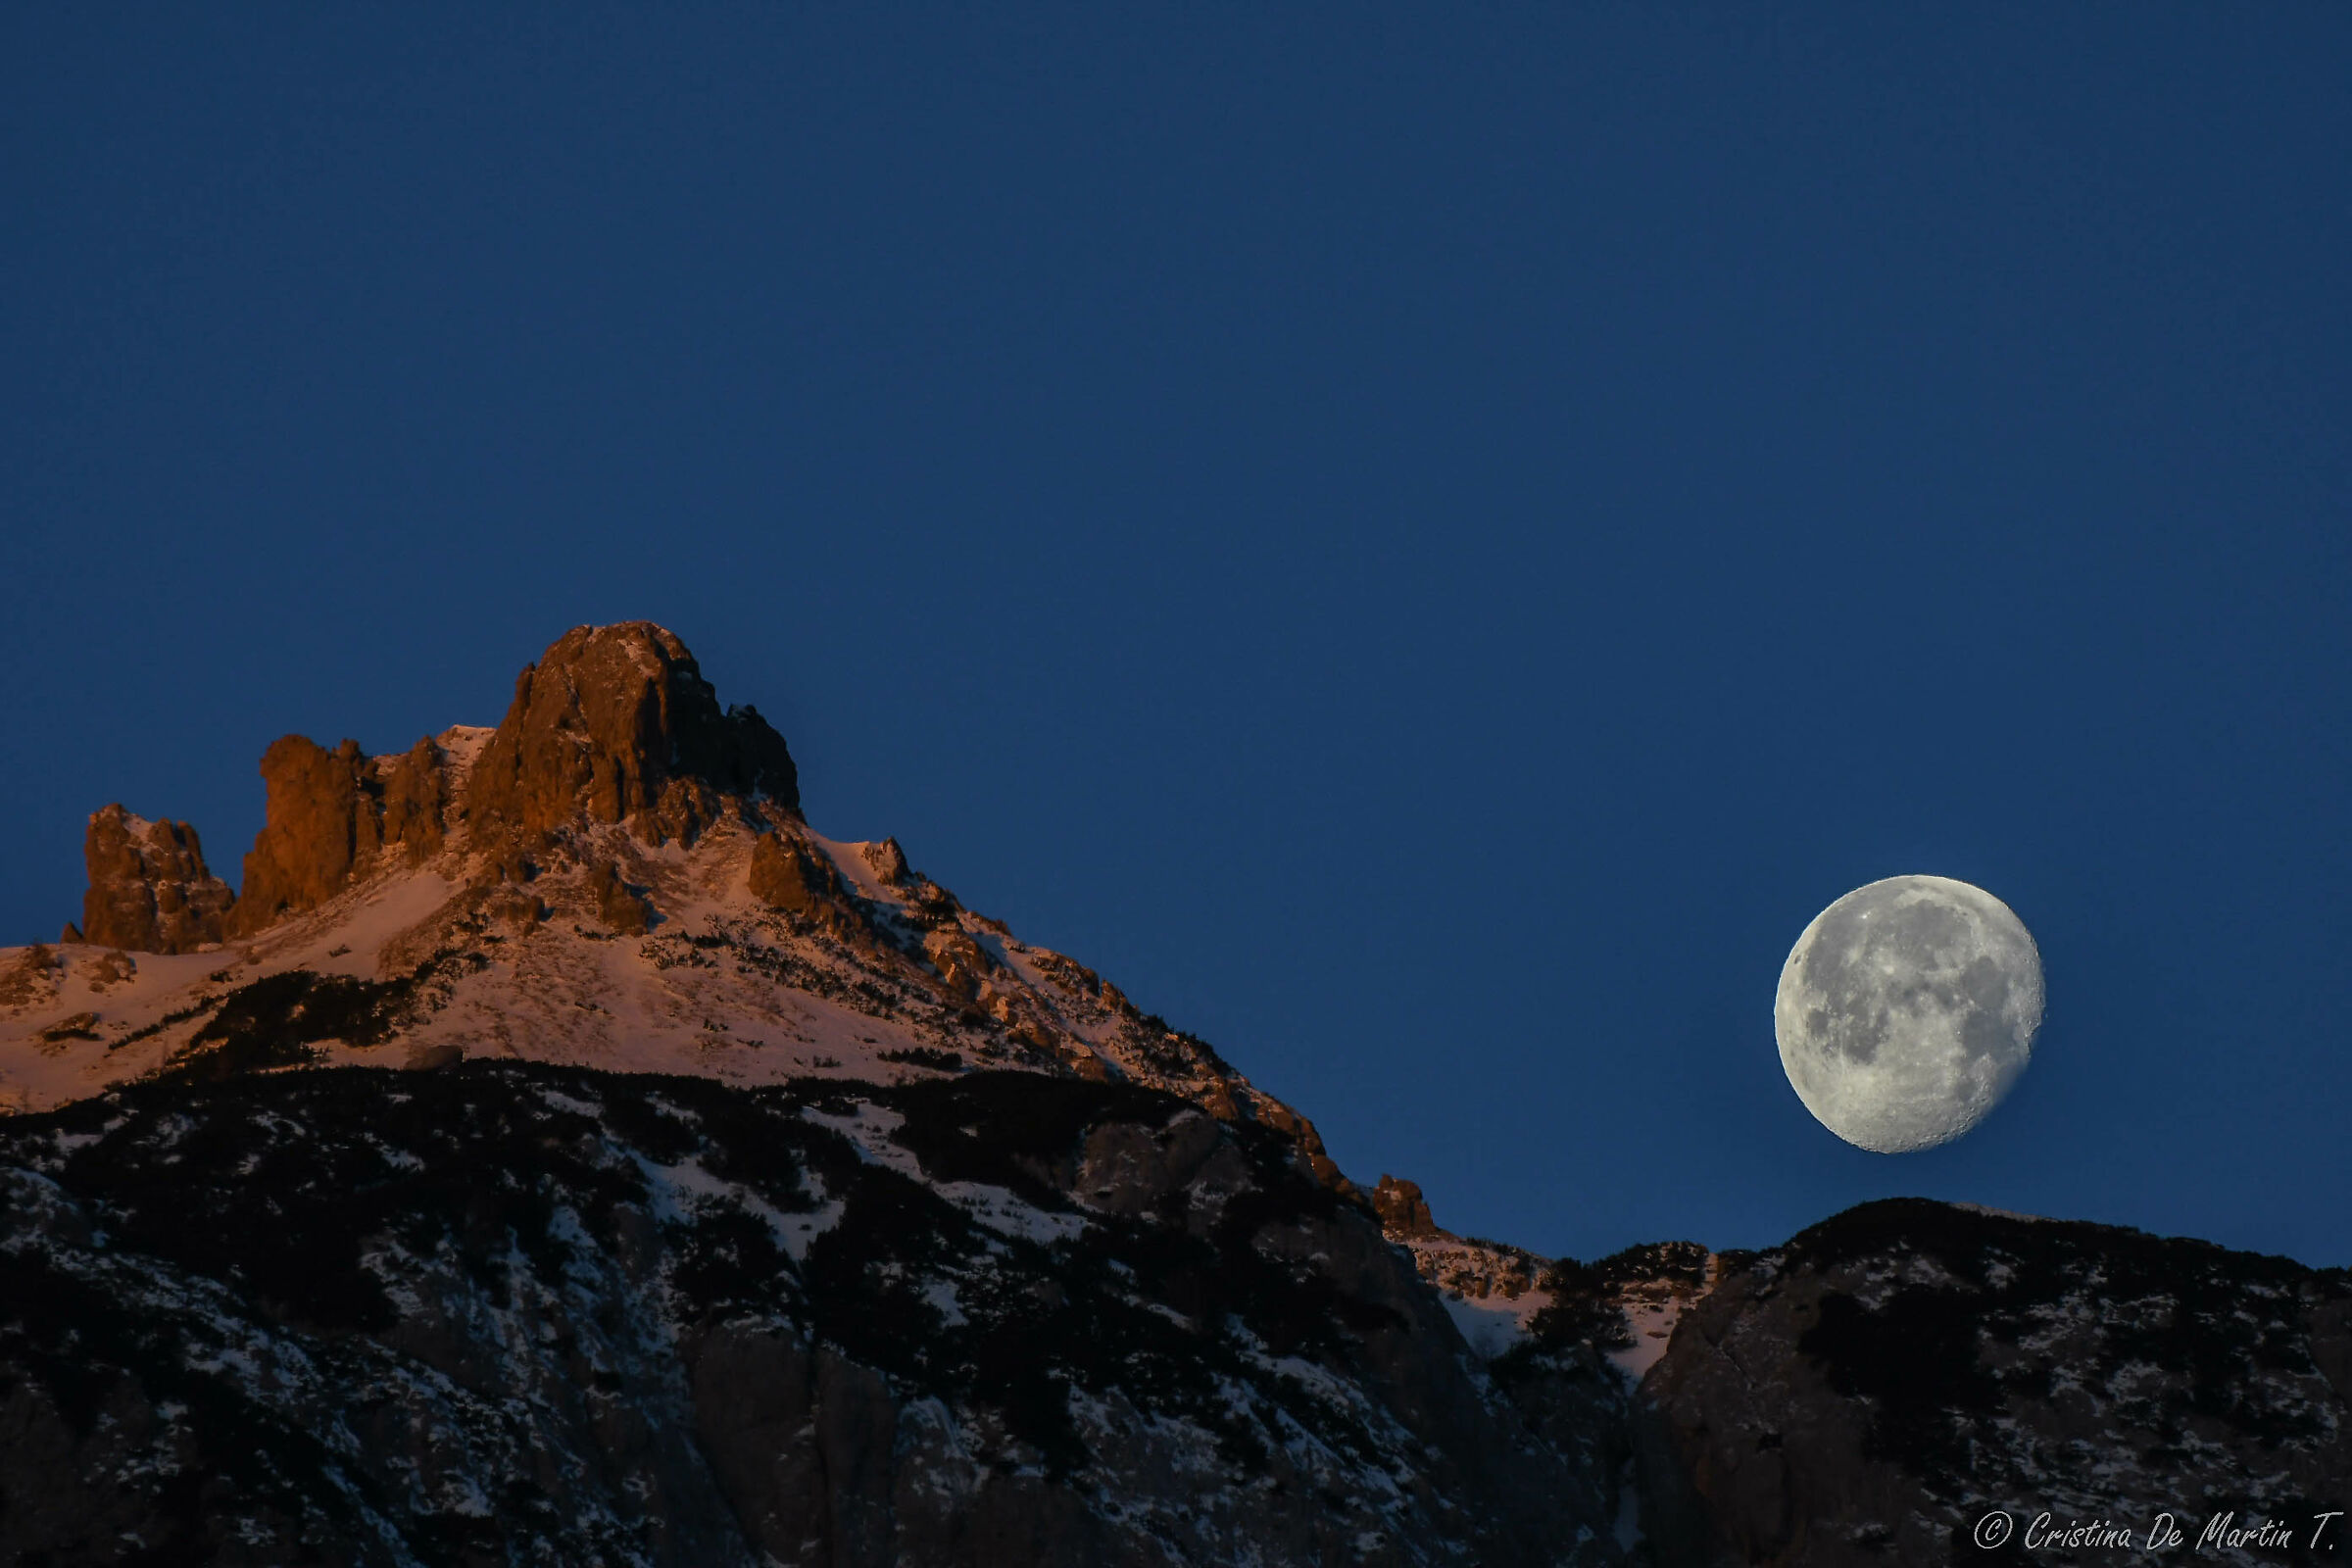 Lunar sunset on the Three Peaks...